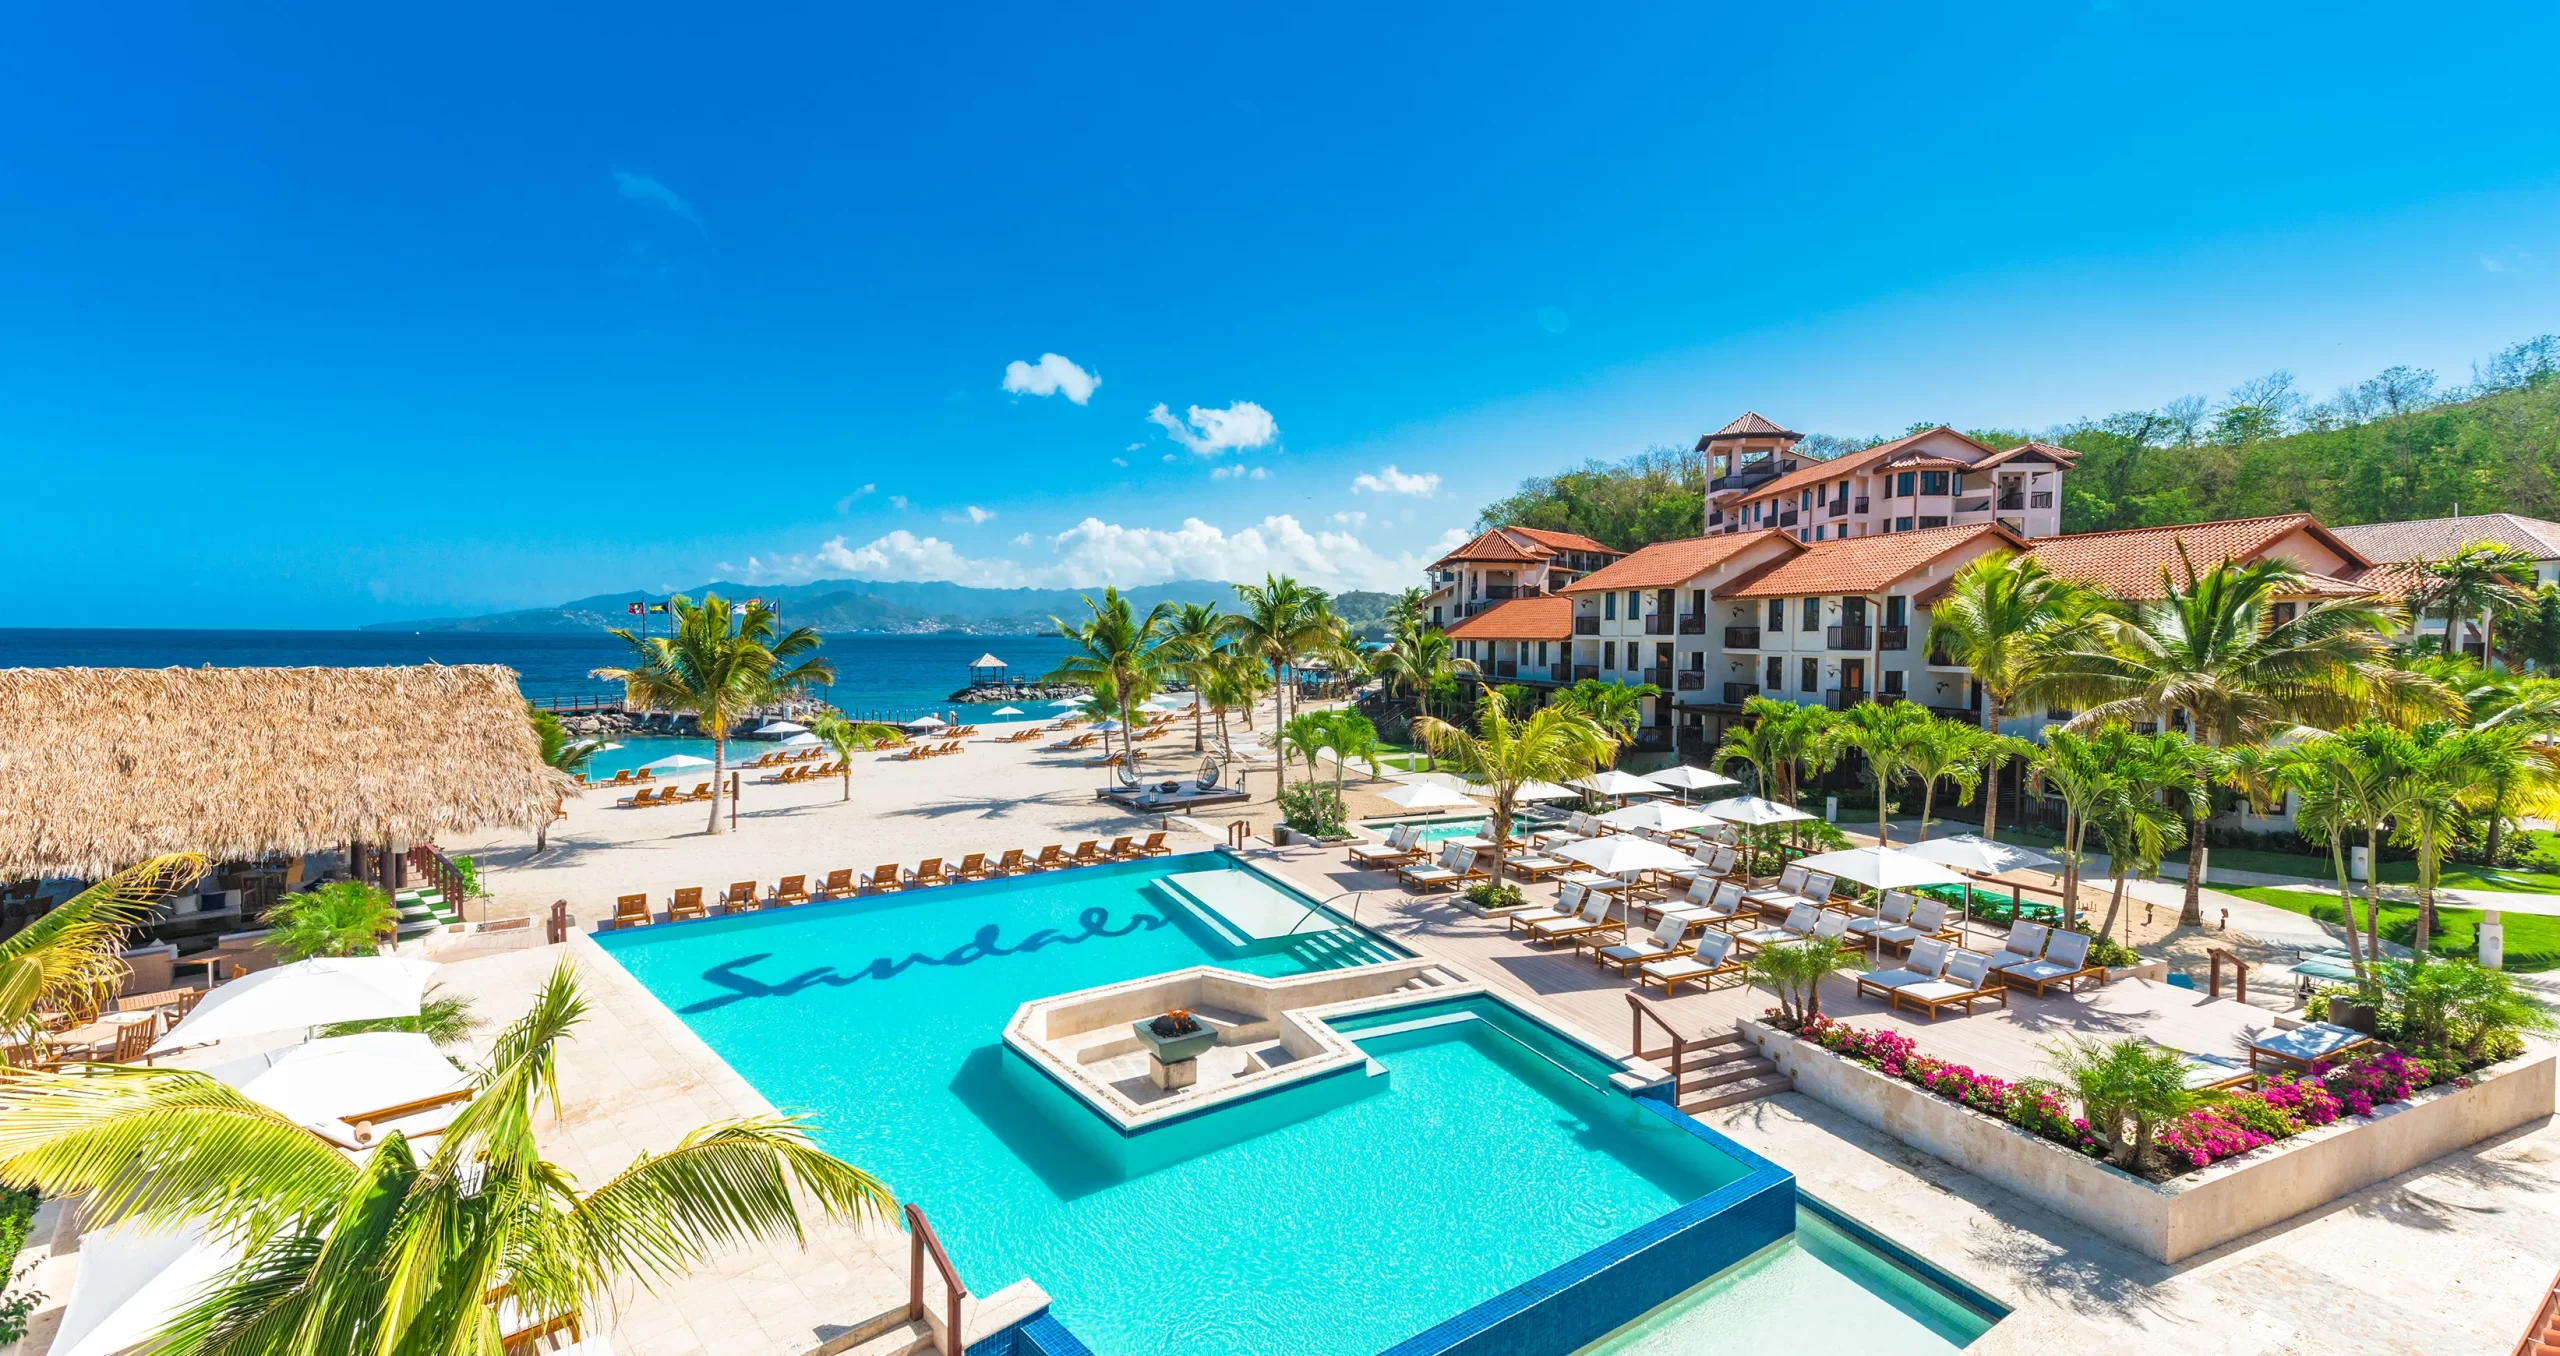 Sandals Grenada Resort - Best Sandals Resort in the Caribbean